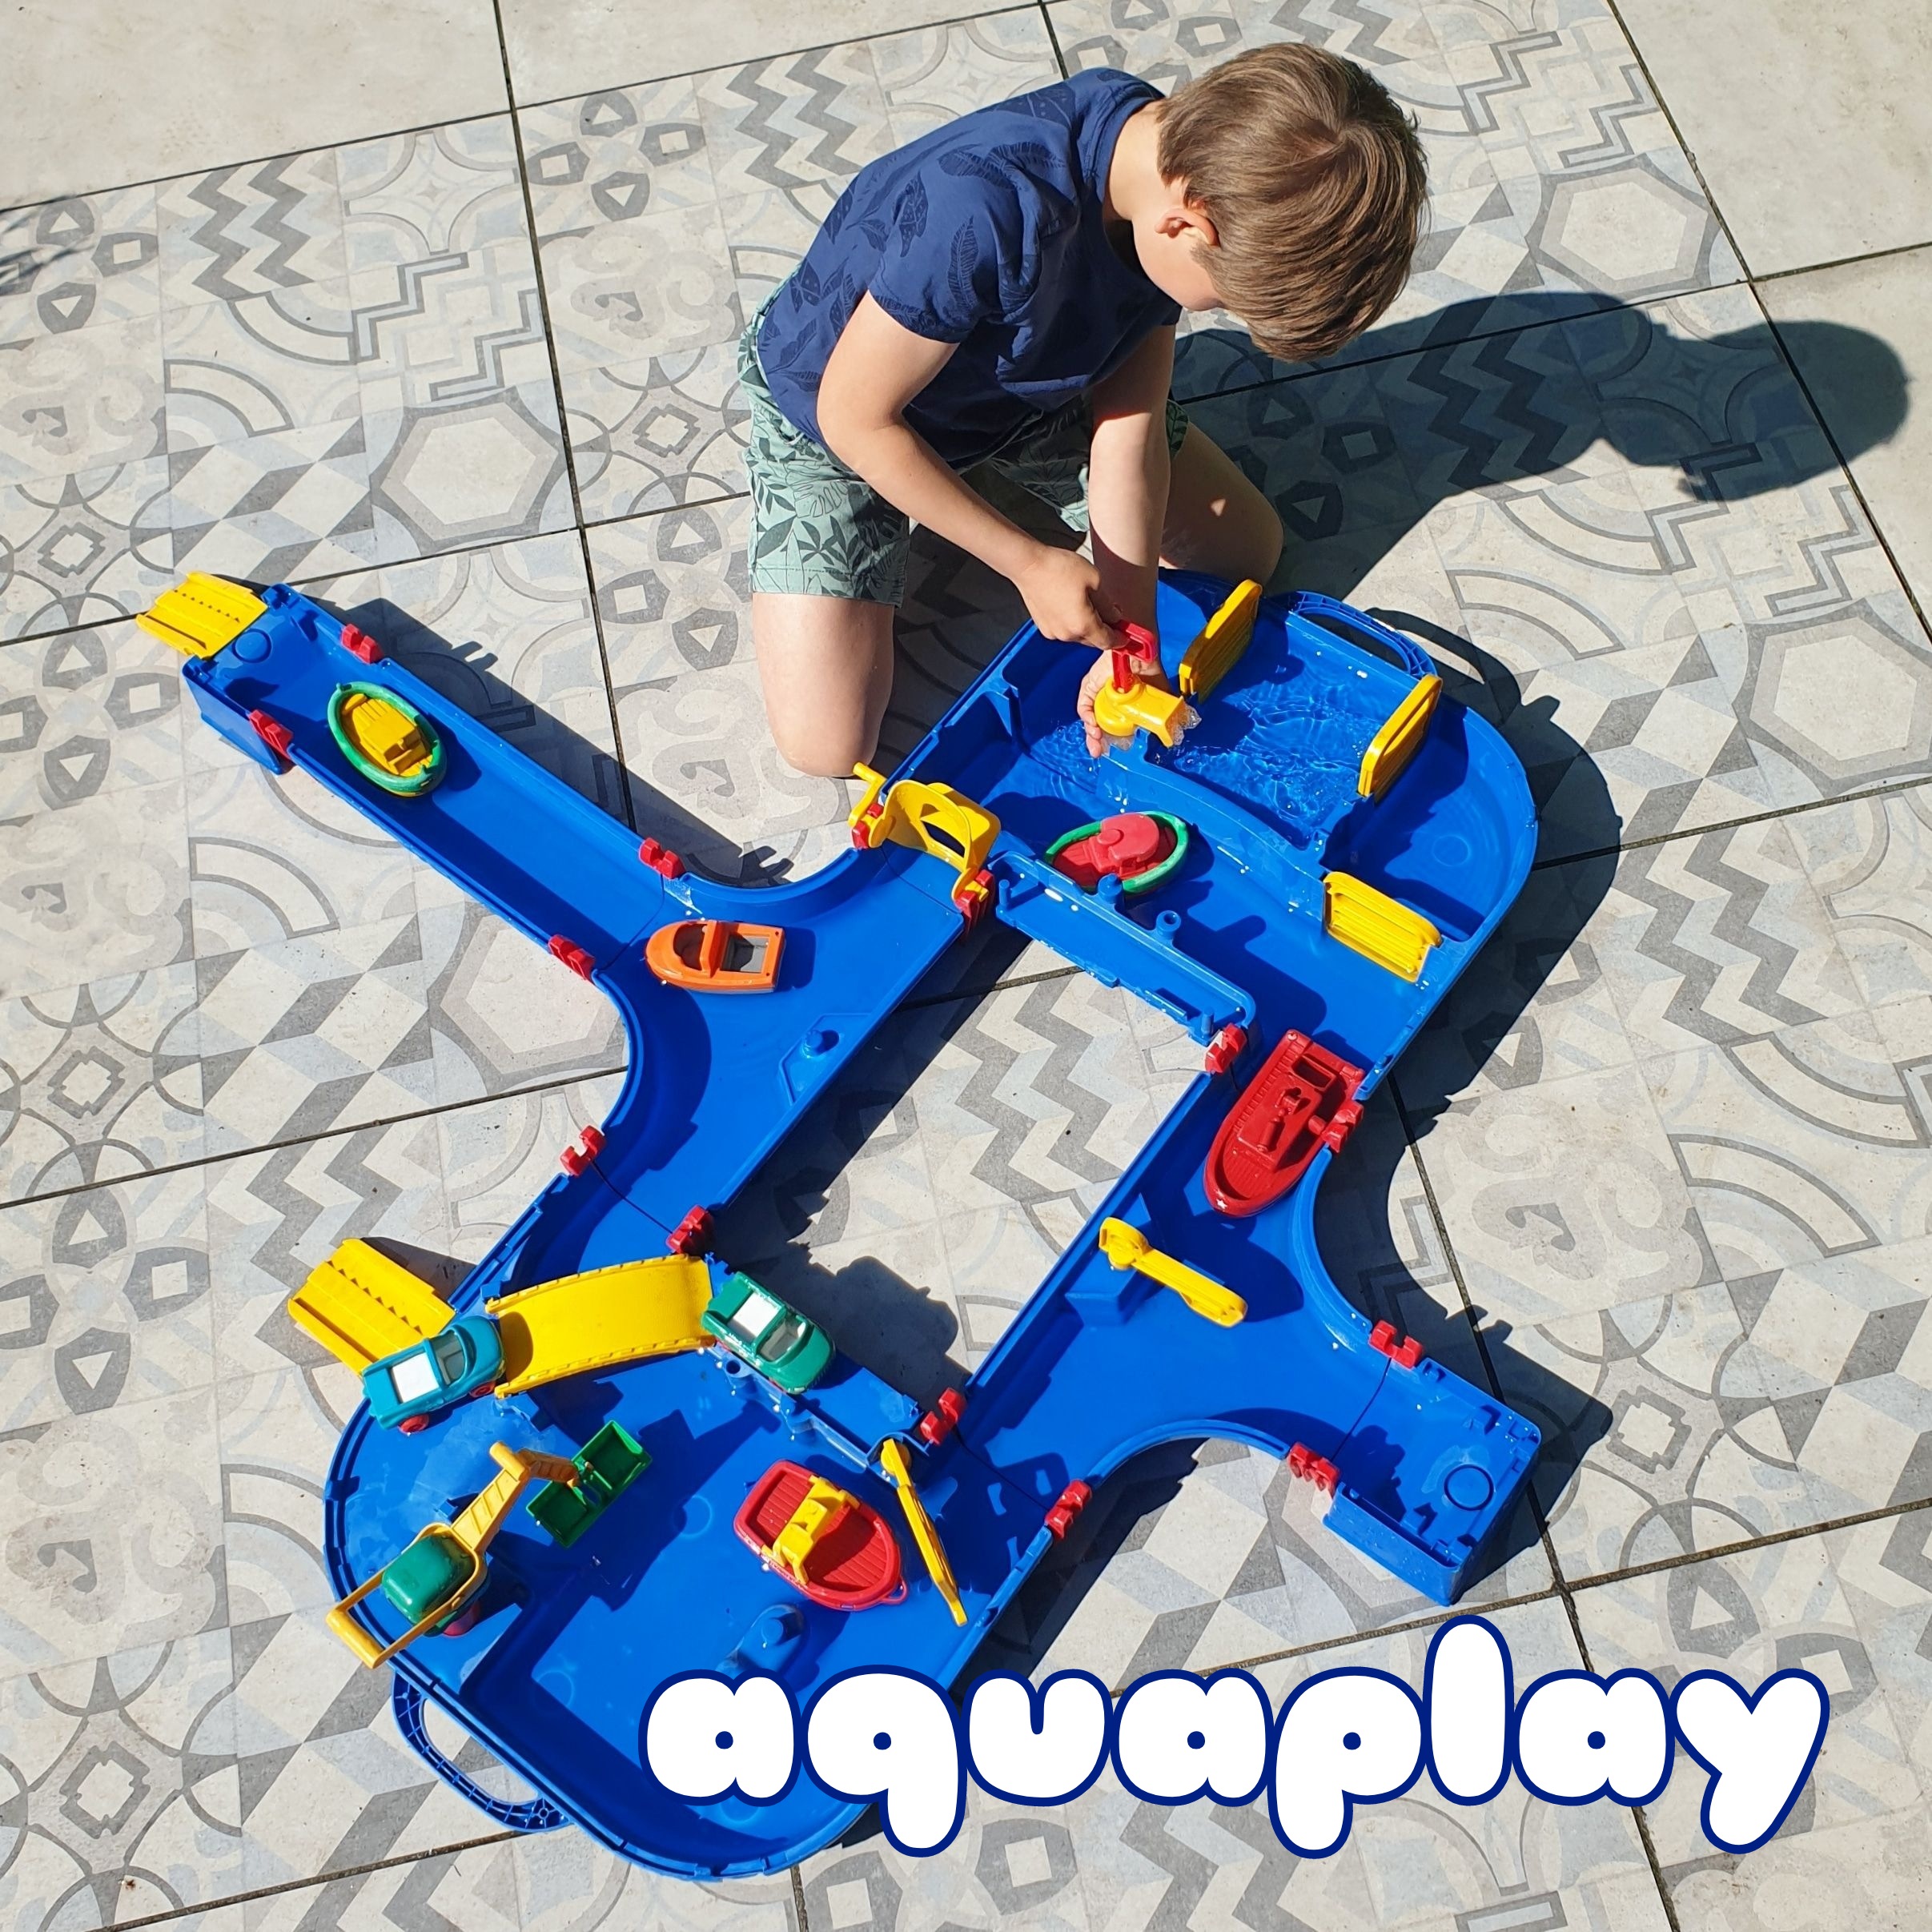 Aquaplay waterbaan: ons favoriete waterspeelgoed. Als vriendinnen mij speelgoed tips vragen, dan noem ik heel vaak de AquaPlay. Want wat hebben we daar thuis ontzettend veel lol van. De Aquaplay waterbaan is ons favoriete waterspeelgoed.